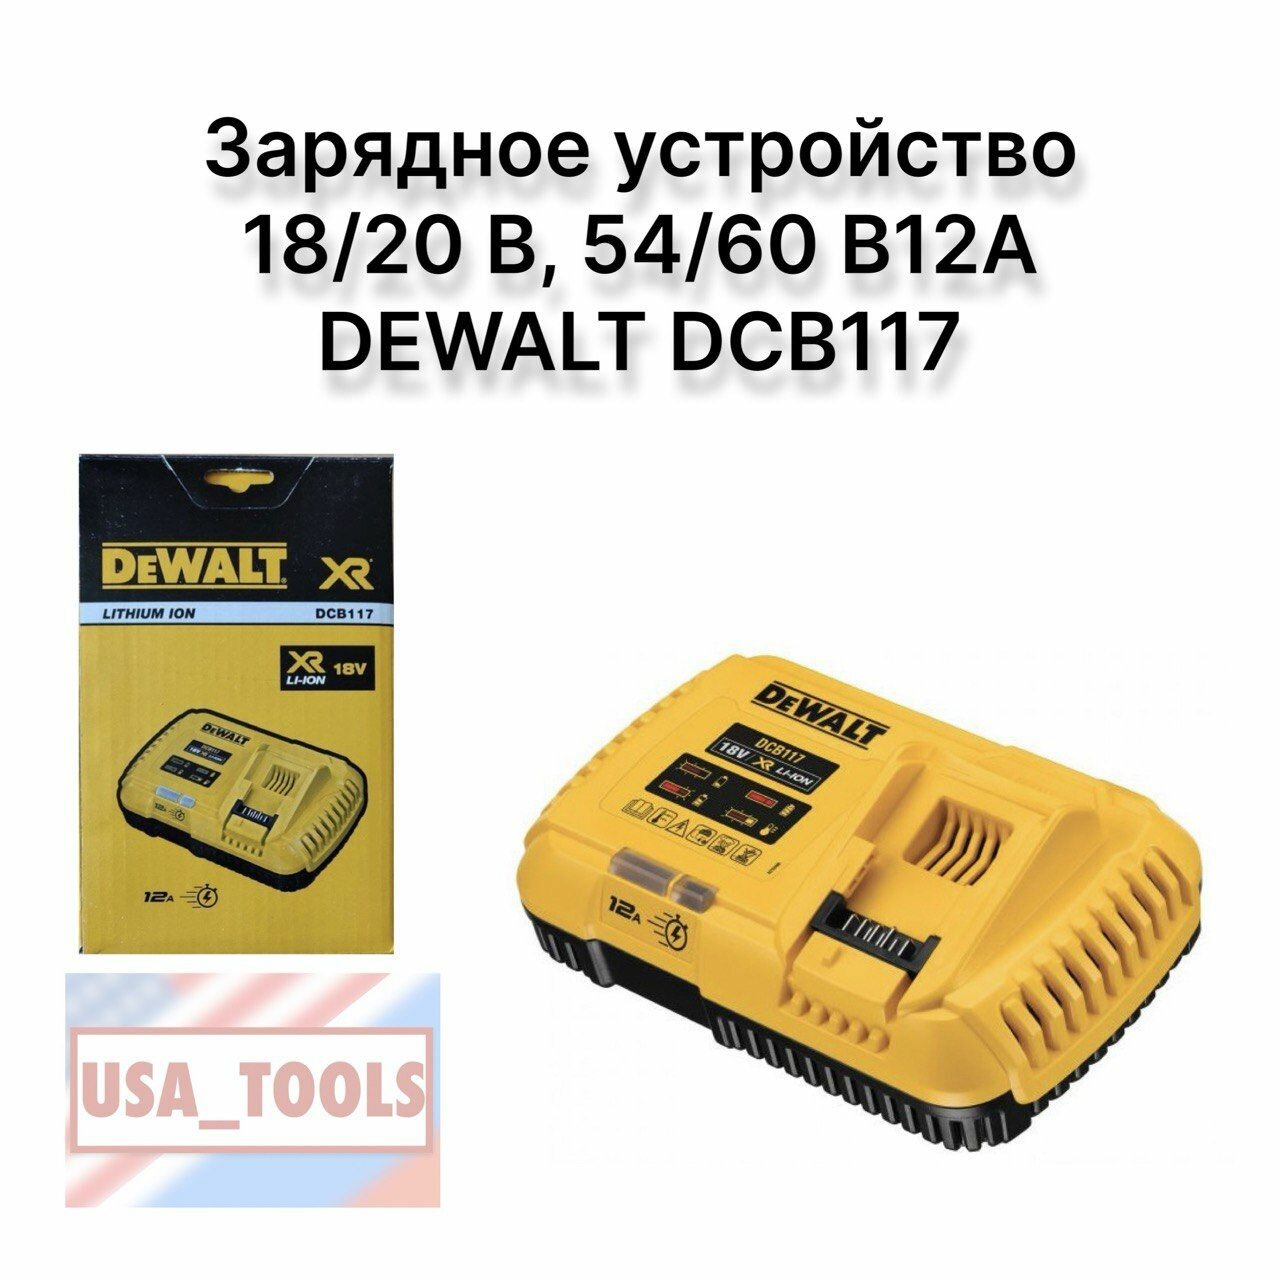 Зарядное устройство 18/20 В, 54/60 В12А DEWALT DCB117